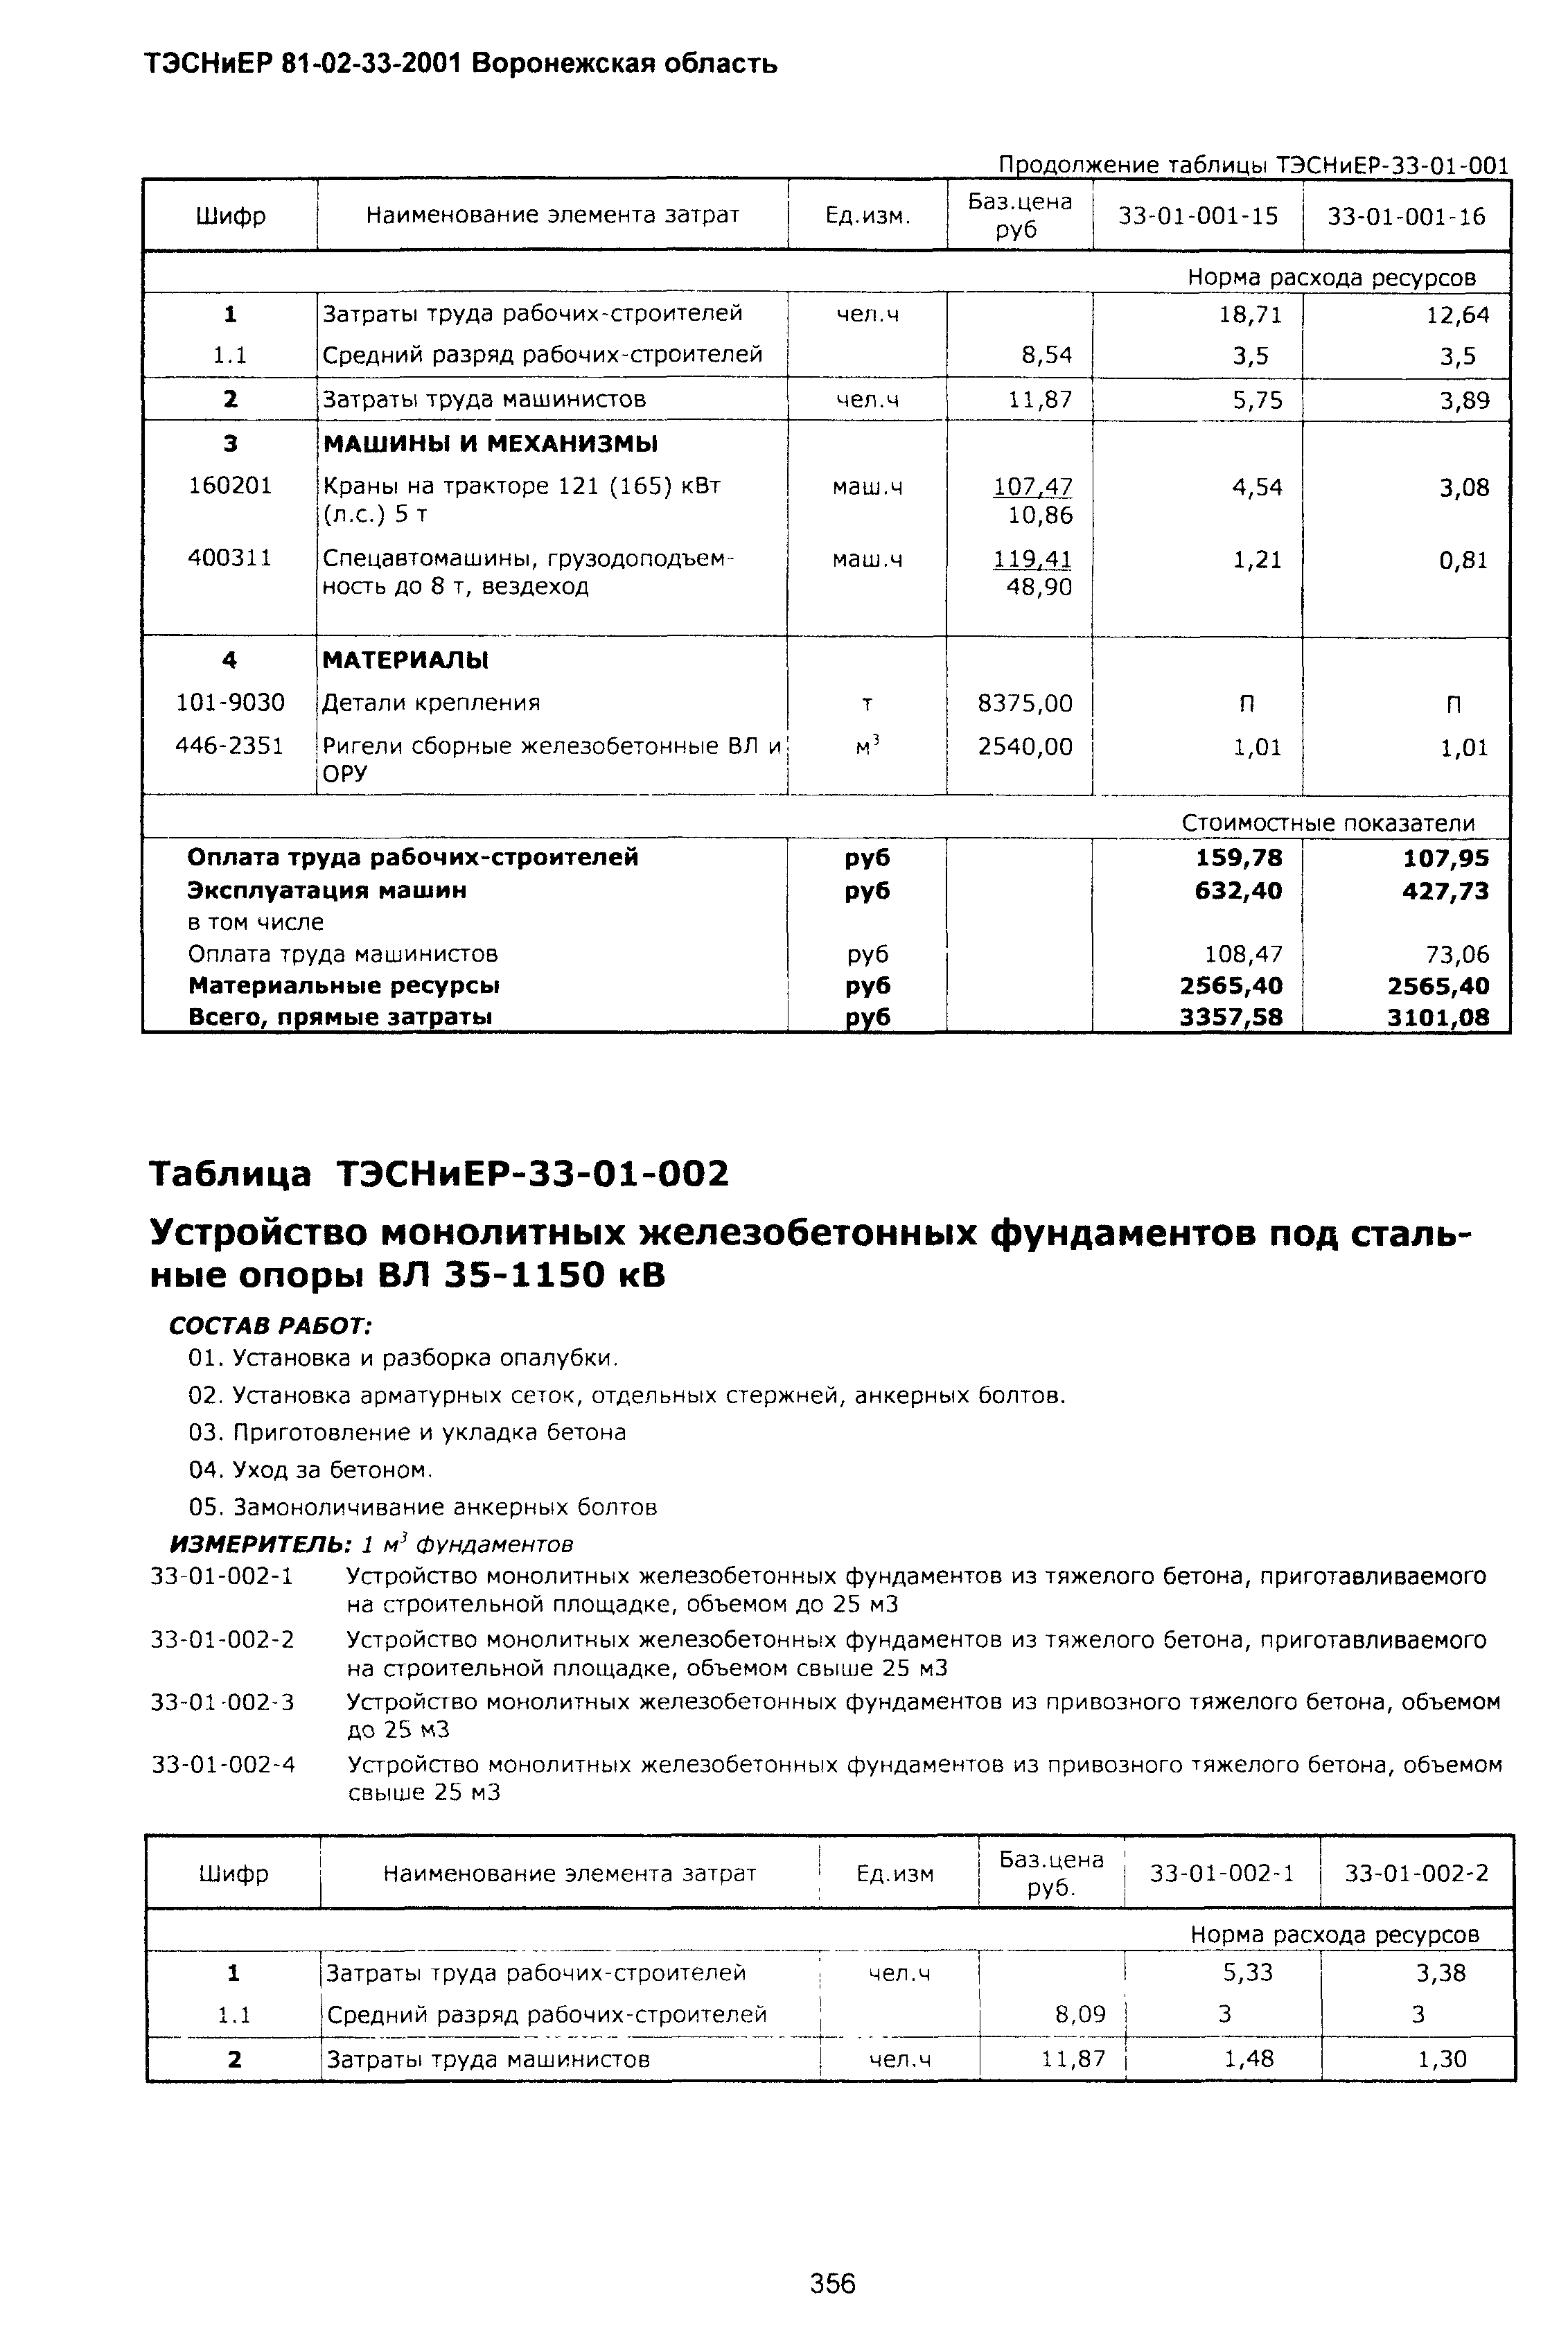 ТЭСНиЕР Воронежской области 81-02-33-2001